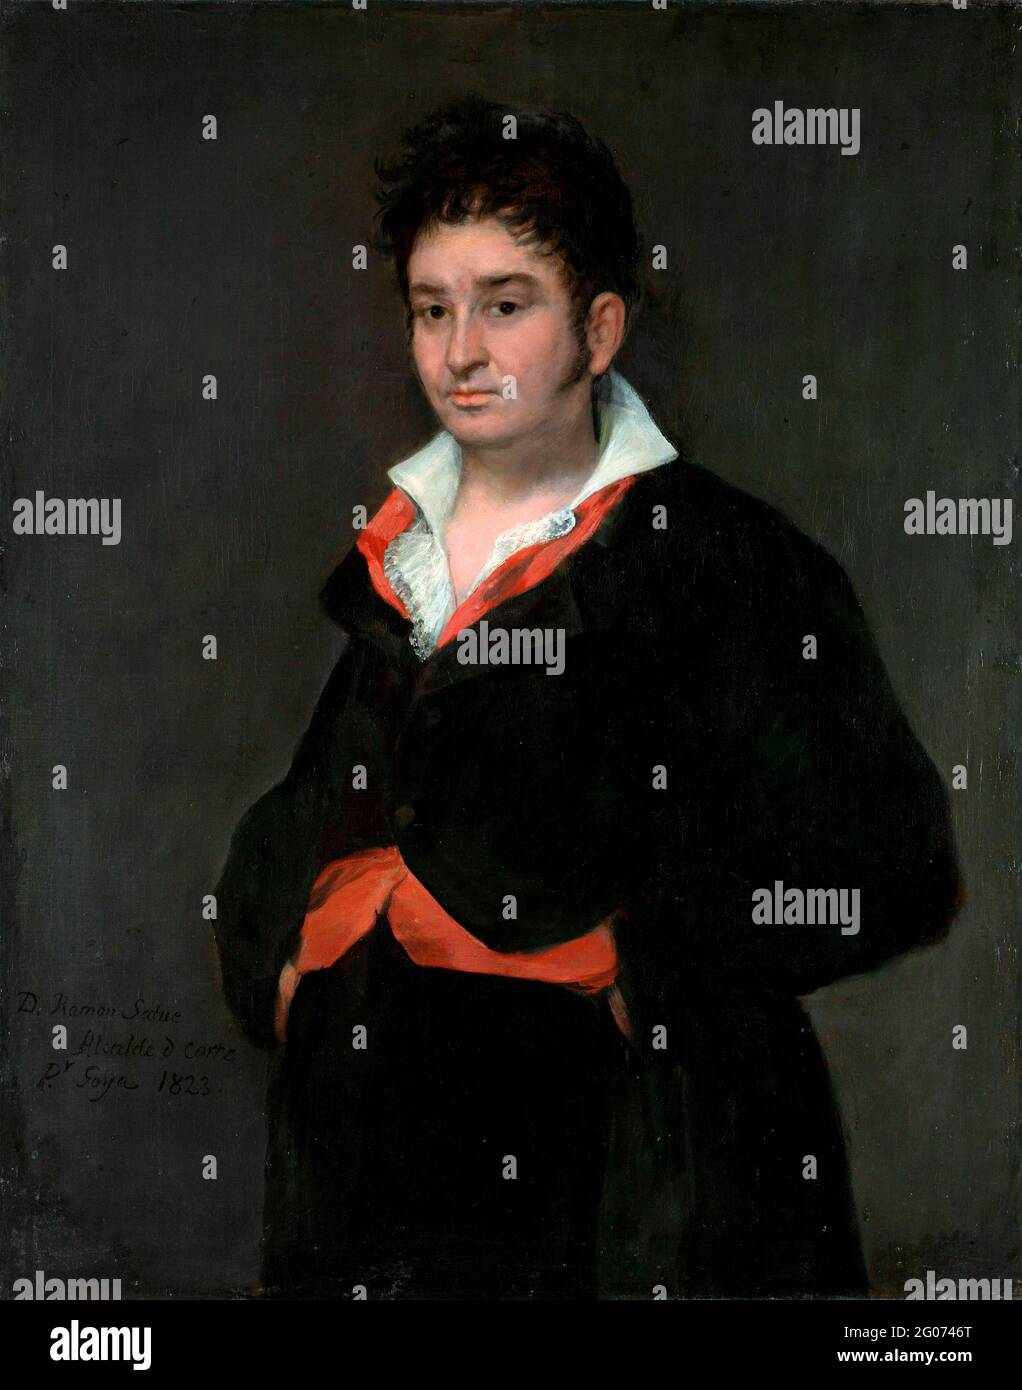 Goya. Retrato de Don Ramón Satué de Francisco José de Goya y Lucientes (1746-1828), óleo sobre lienzo, 1823 Foto de stock